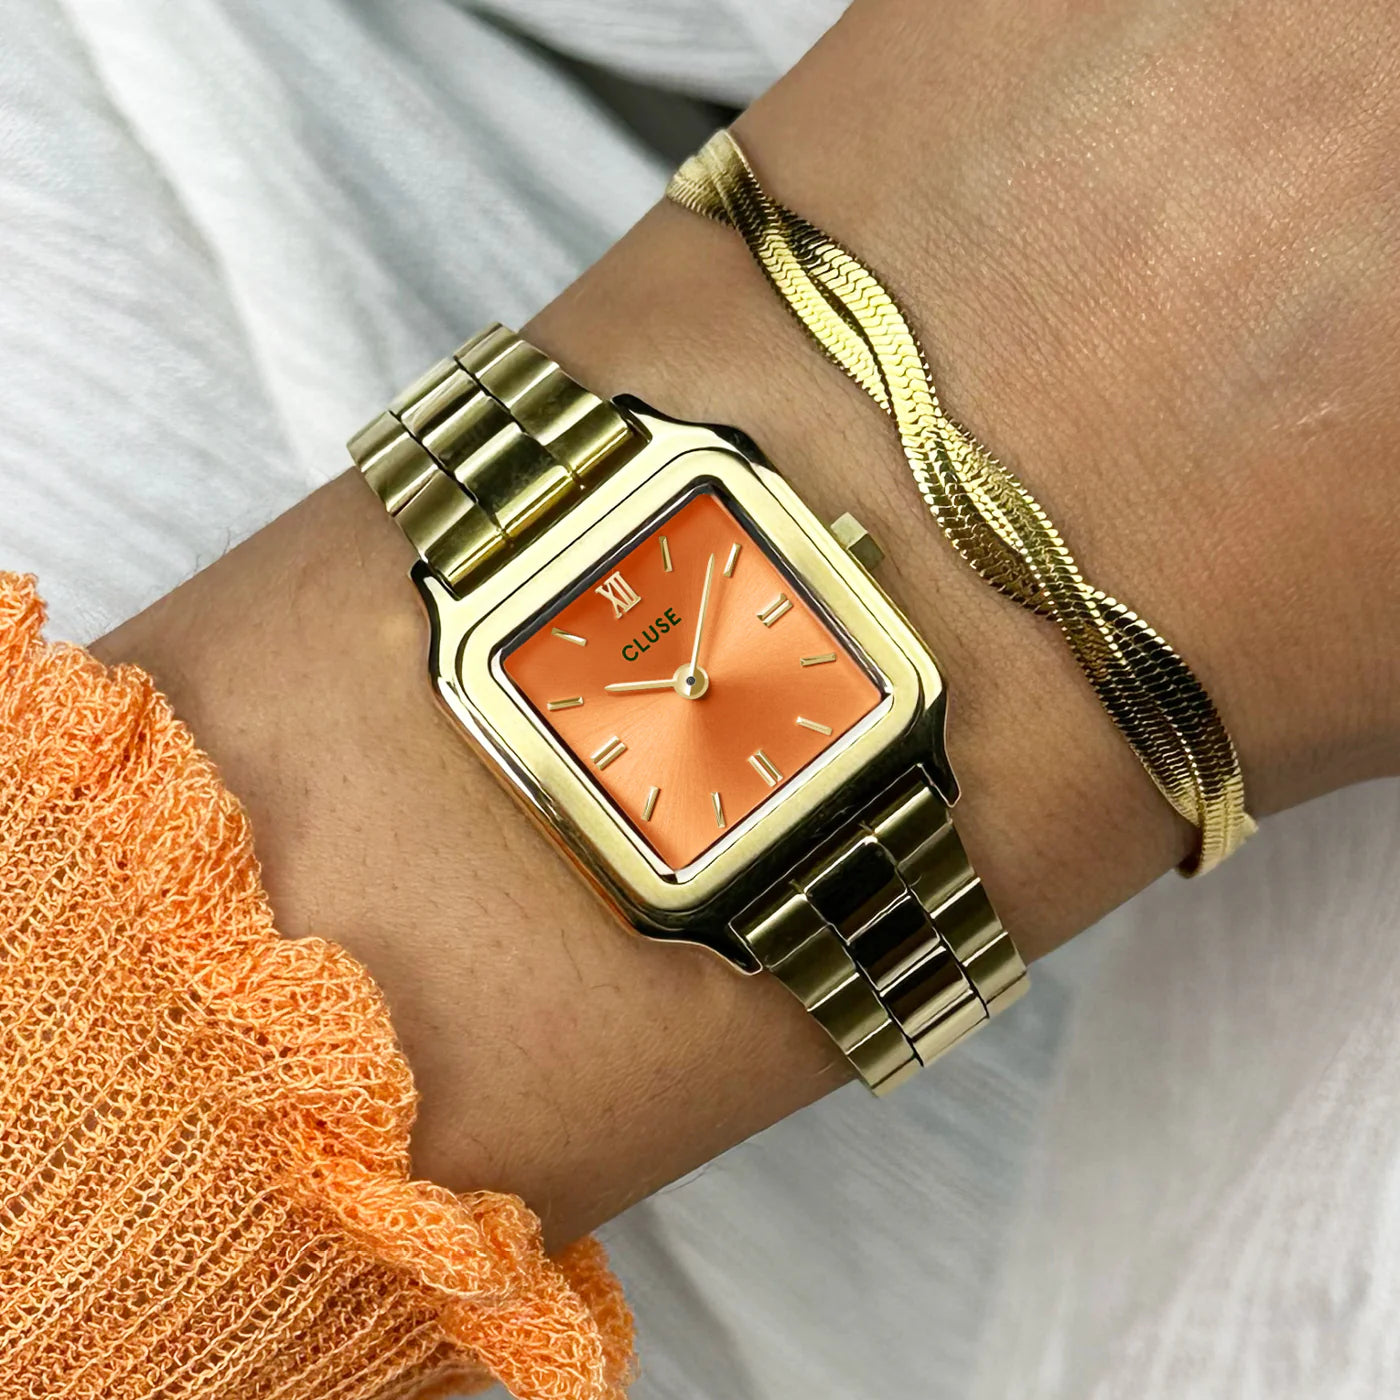 Wristshot der Cluse Stahl-Uhr "Gracieuse Petite" mit einem gelbgold-farbenem Gehäuse und orangem Zifferblatt an einem Frauenhandgelenlk